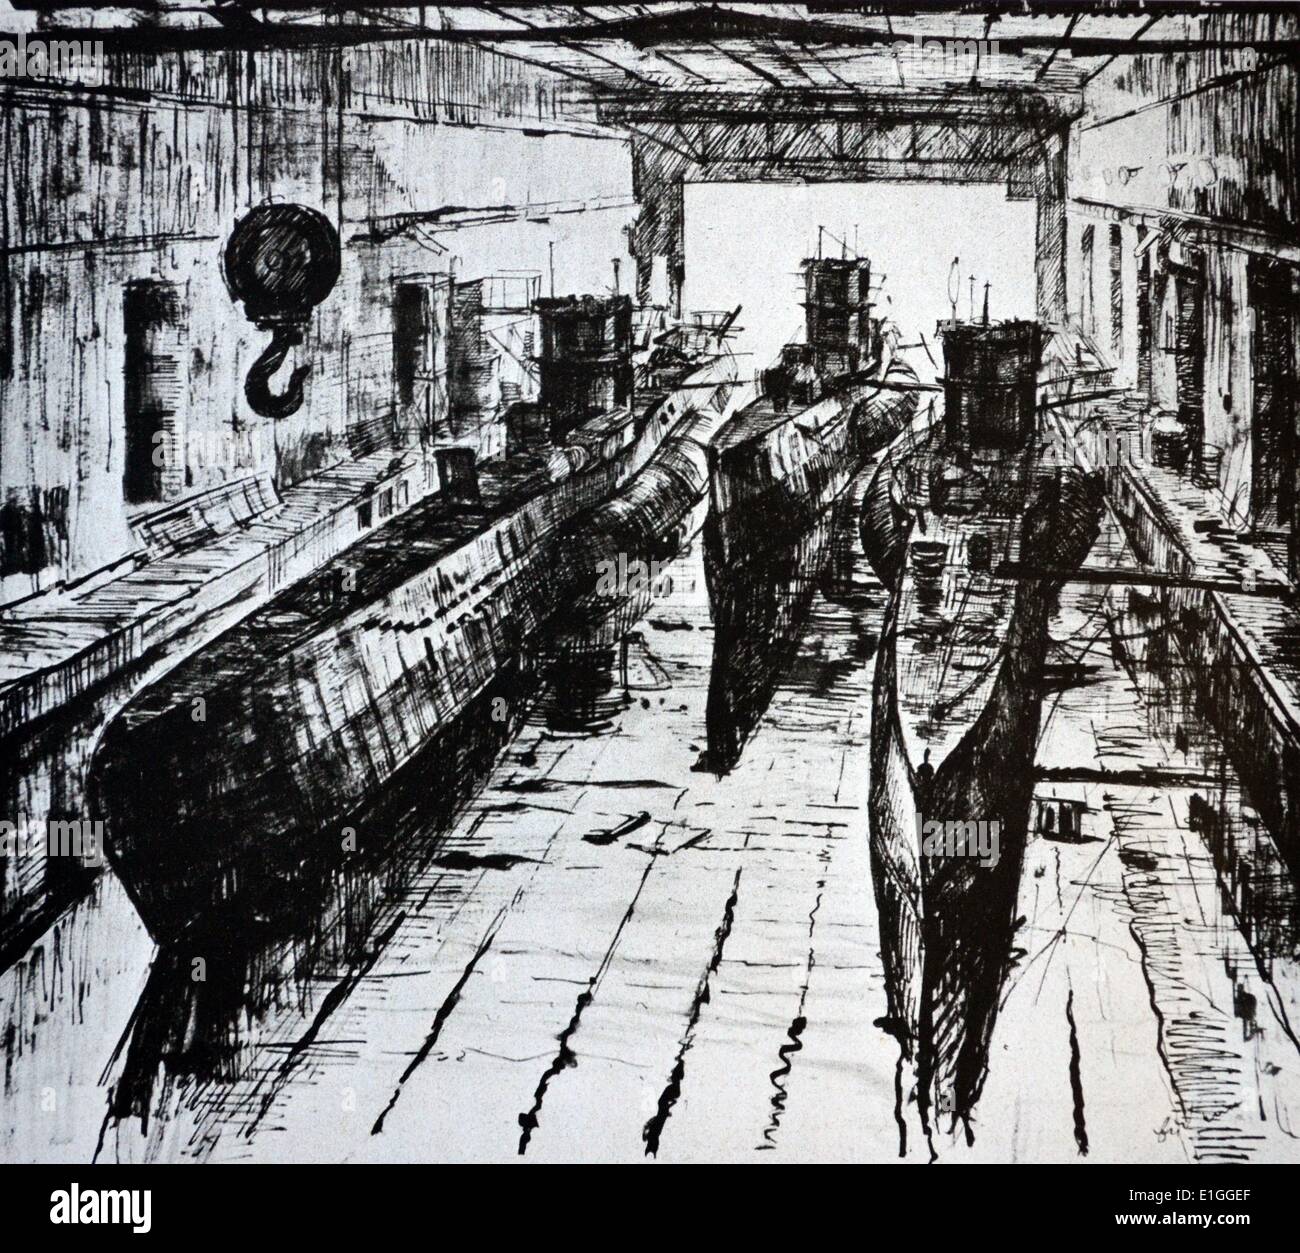 Un U-boat dock sottomarino con tre sommergibili da Lothar-Günther Buchheim (6 febbraio 1918 - 22 febbraio 2007) autore tedesco e pittore. Egli è il più noto per il suo romanzo Das Boot (1973), che divenne un best seller internazionale ed è stato adattato nel 1981 come un Oscar-nominato film. Foto Stock